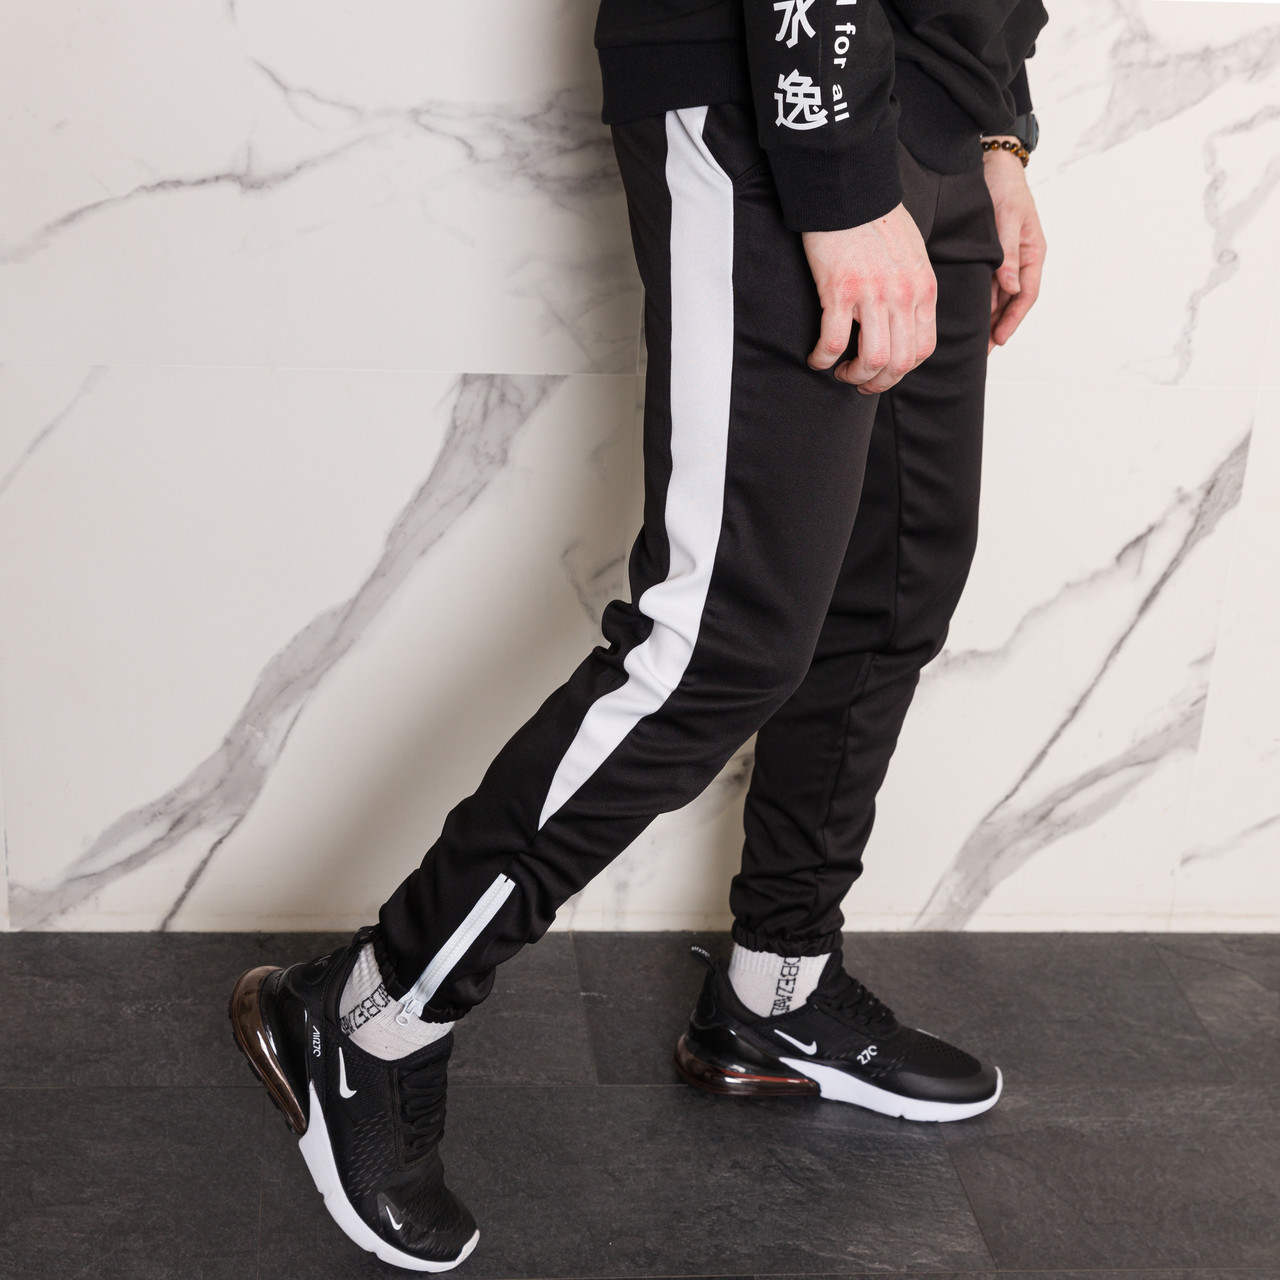 Спортивные штаны черные с белым лампасом мужские бренд ТУР модель Рокки (Rocky) TURWEAR